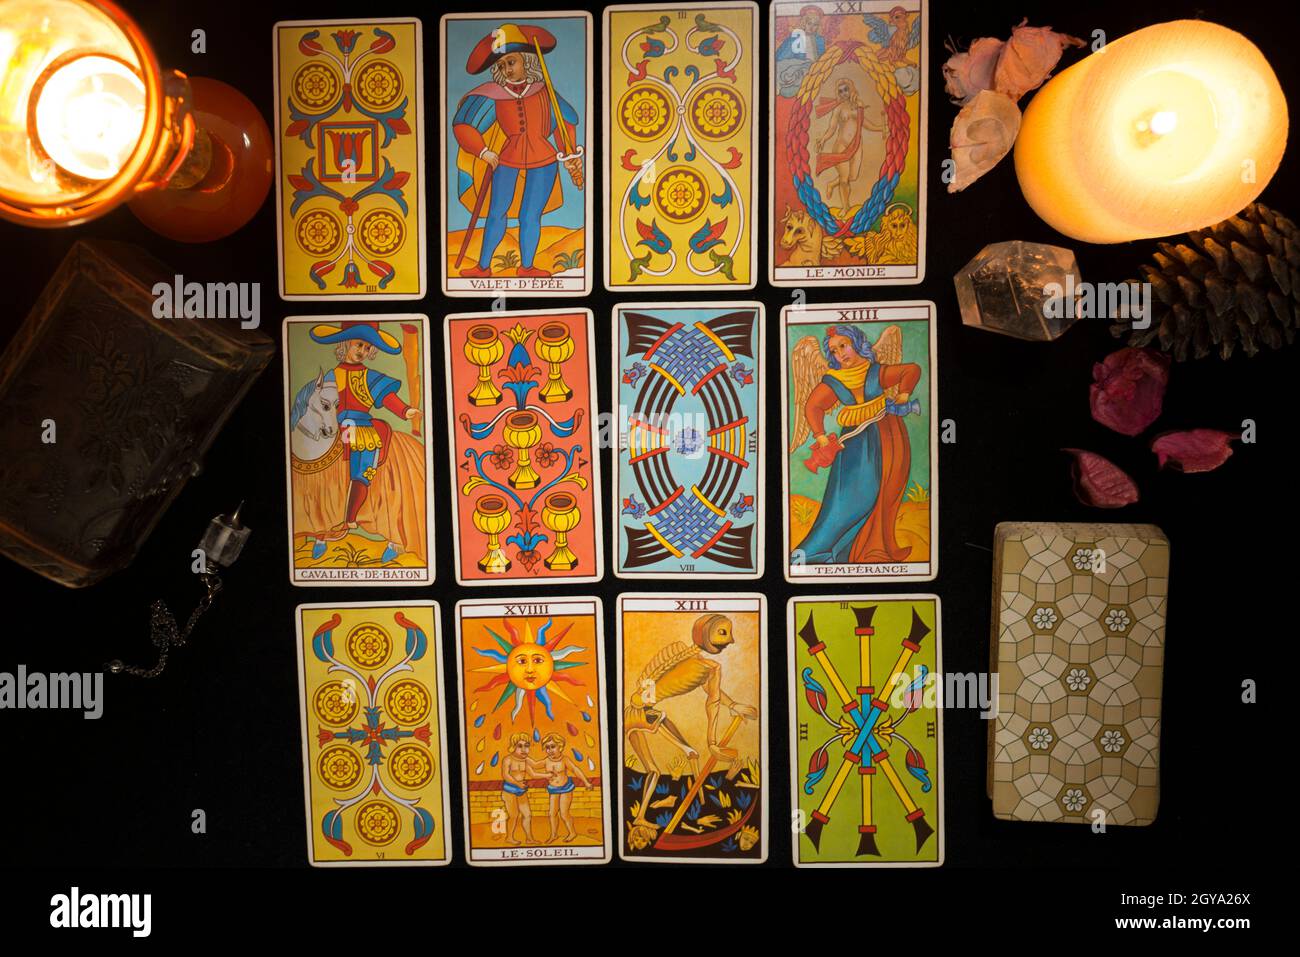 Tarot-Karten verbreiten, um die Zukunft vorherzusagen. Konzept einer Tarot-Kartensitzung. Blick von oben. Stockfoto